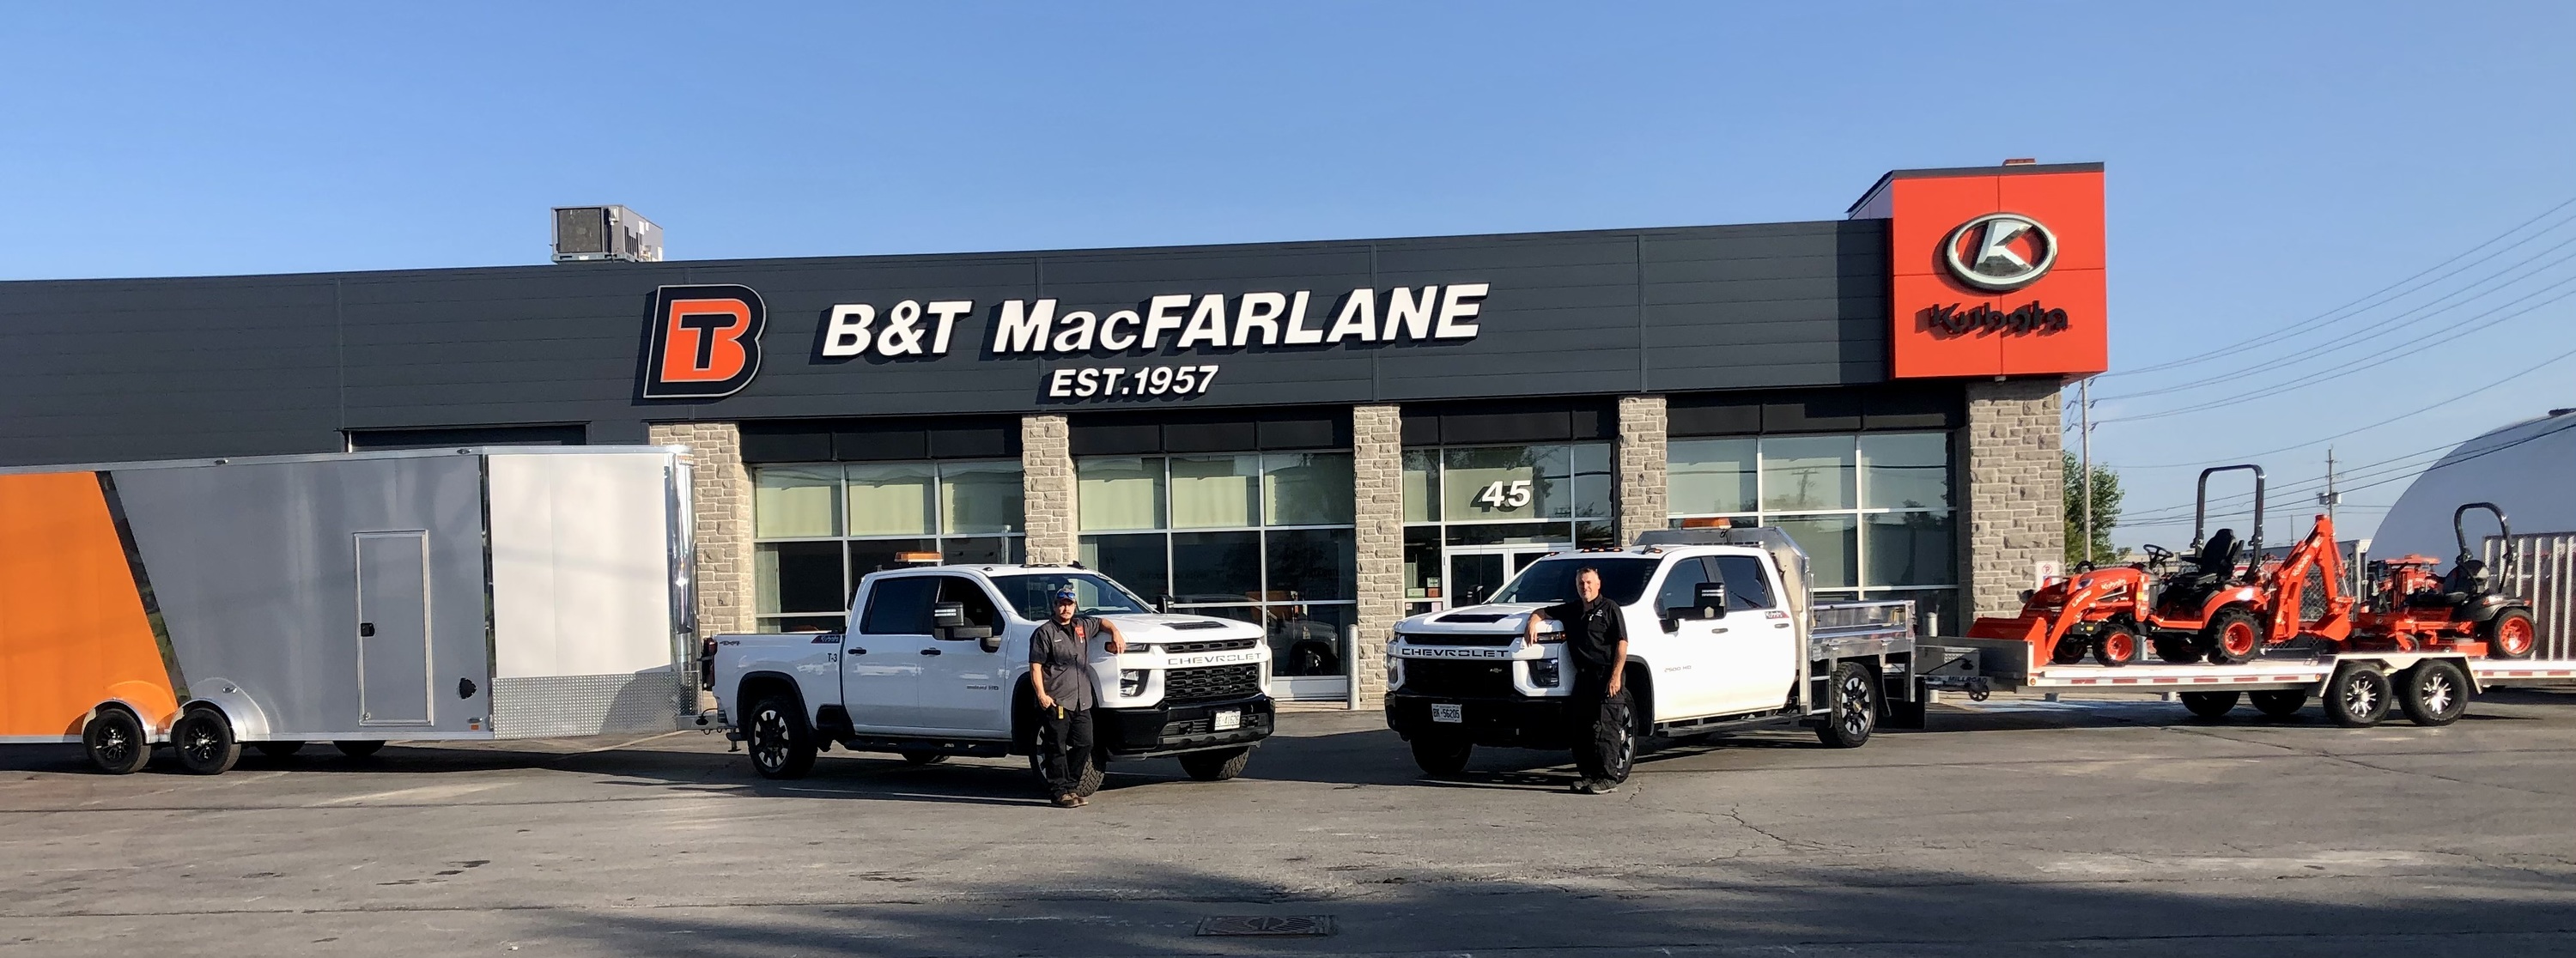 Visit B&T MacFarlane today!